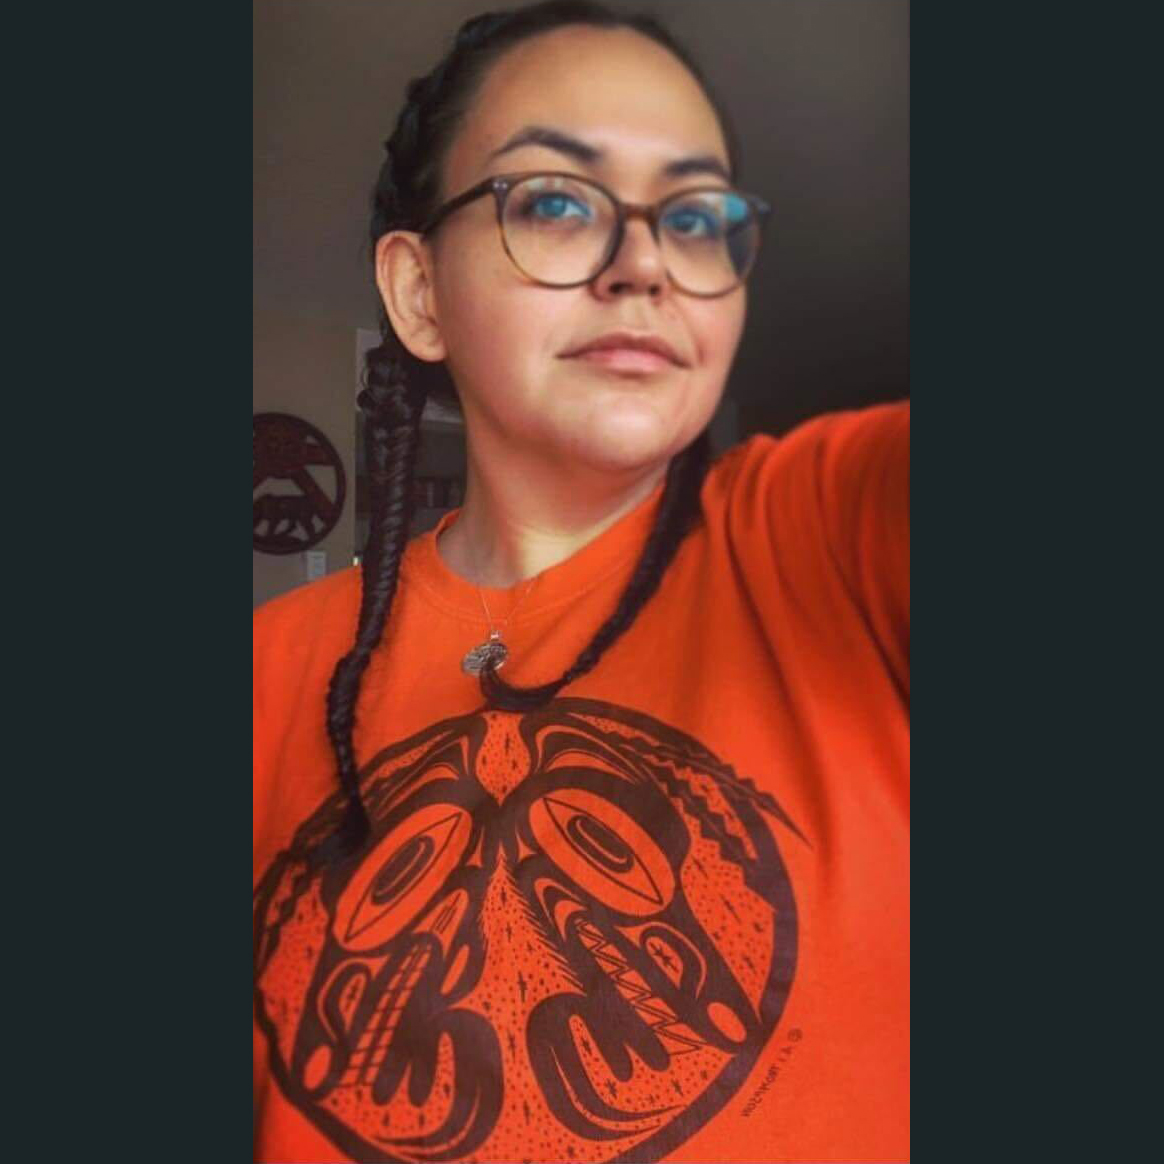 Indigenous woman wearing an orange shirt.